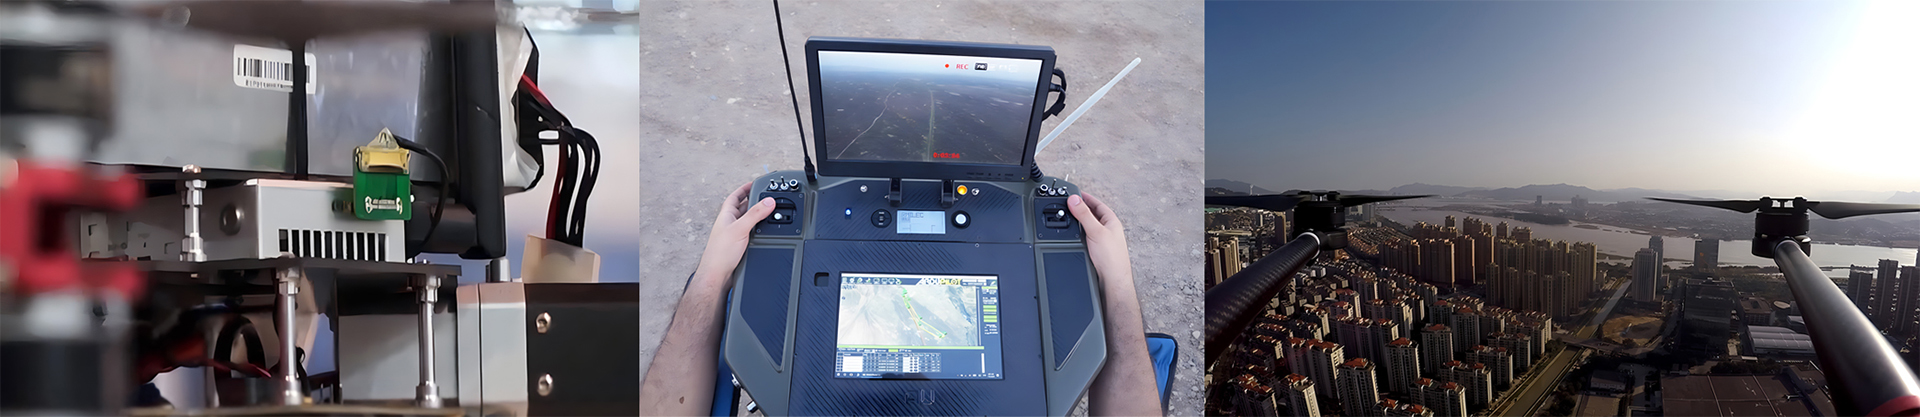 FIP2410-10km-UAV-Digital-video-sender-application-scenario